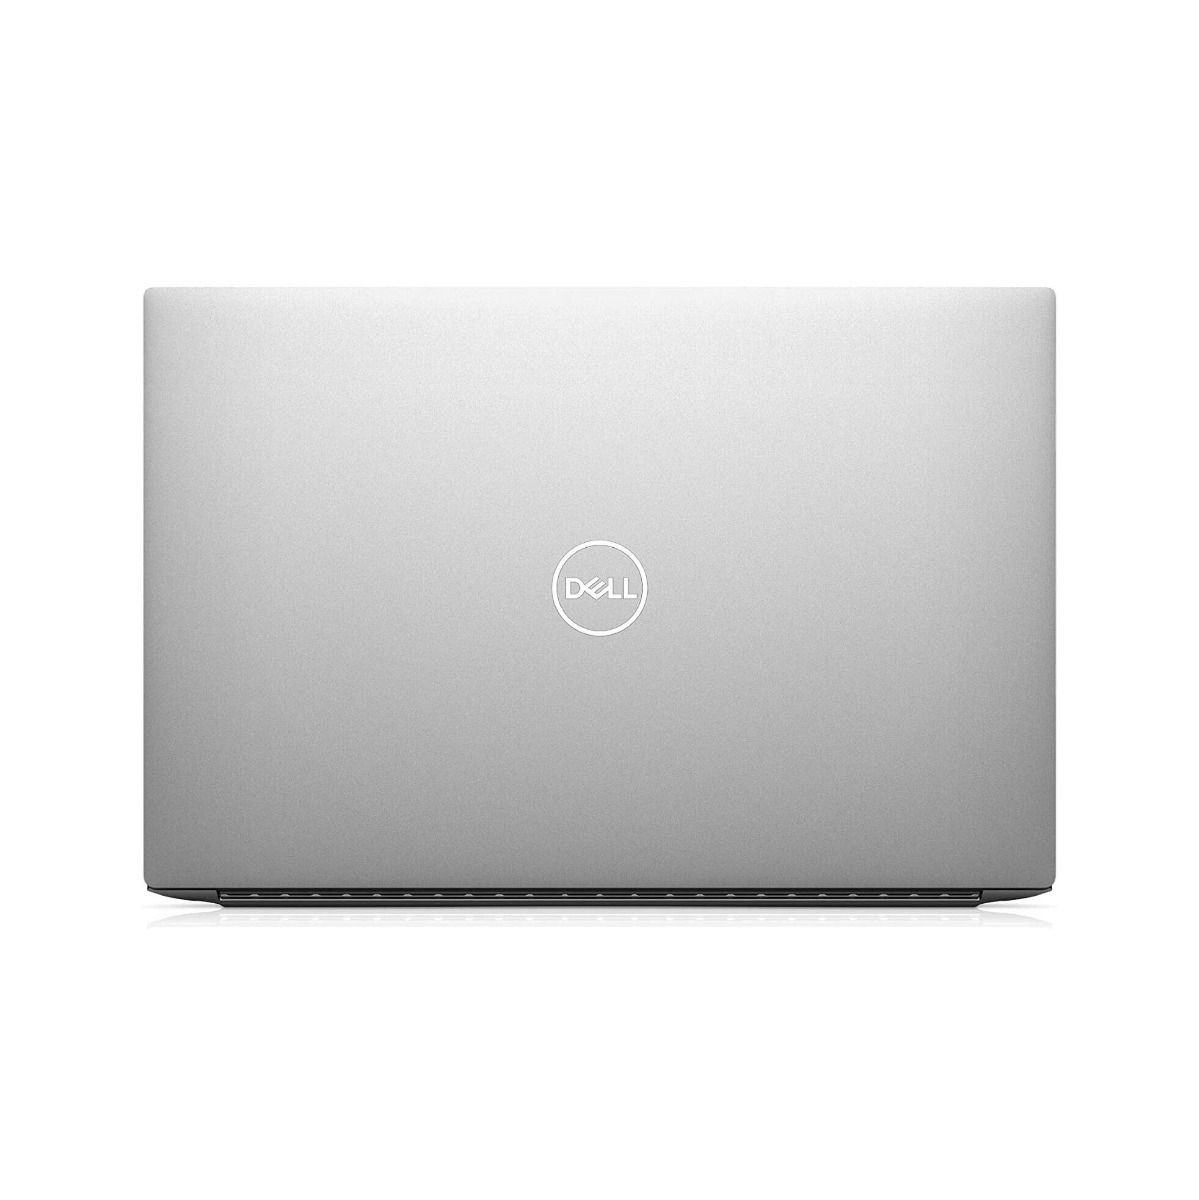 Dell XPS 15 9500 15.6" Laptop Intel i7 10th Gen 16GB RAM 1TB SSD GTX 1650Ti